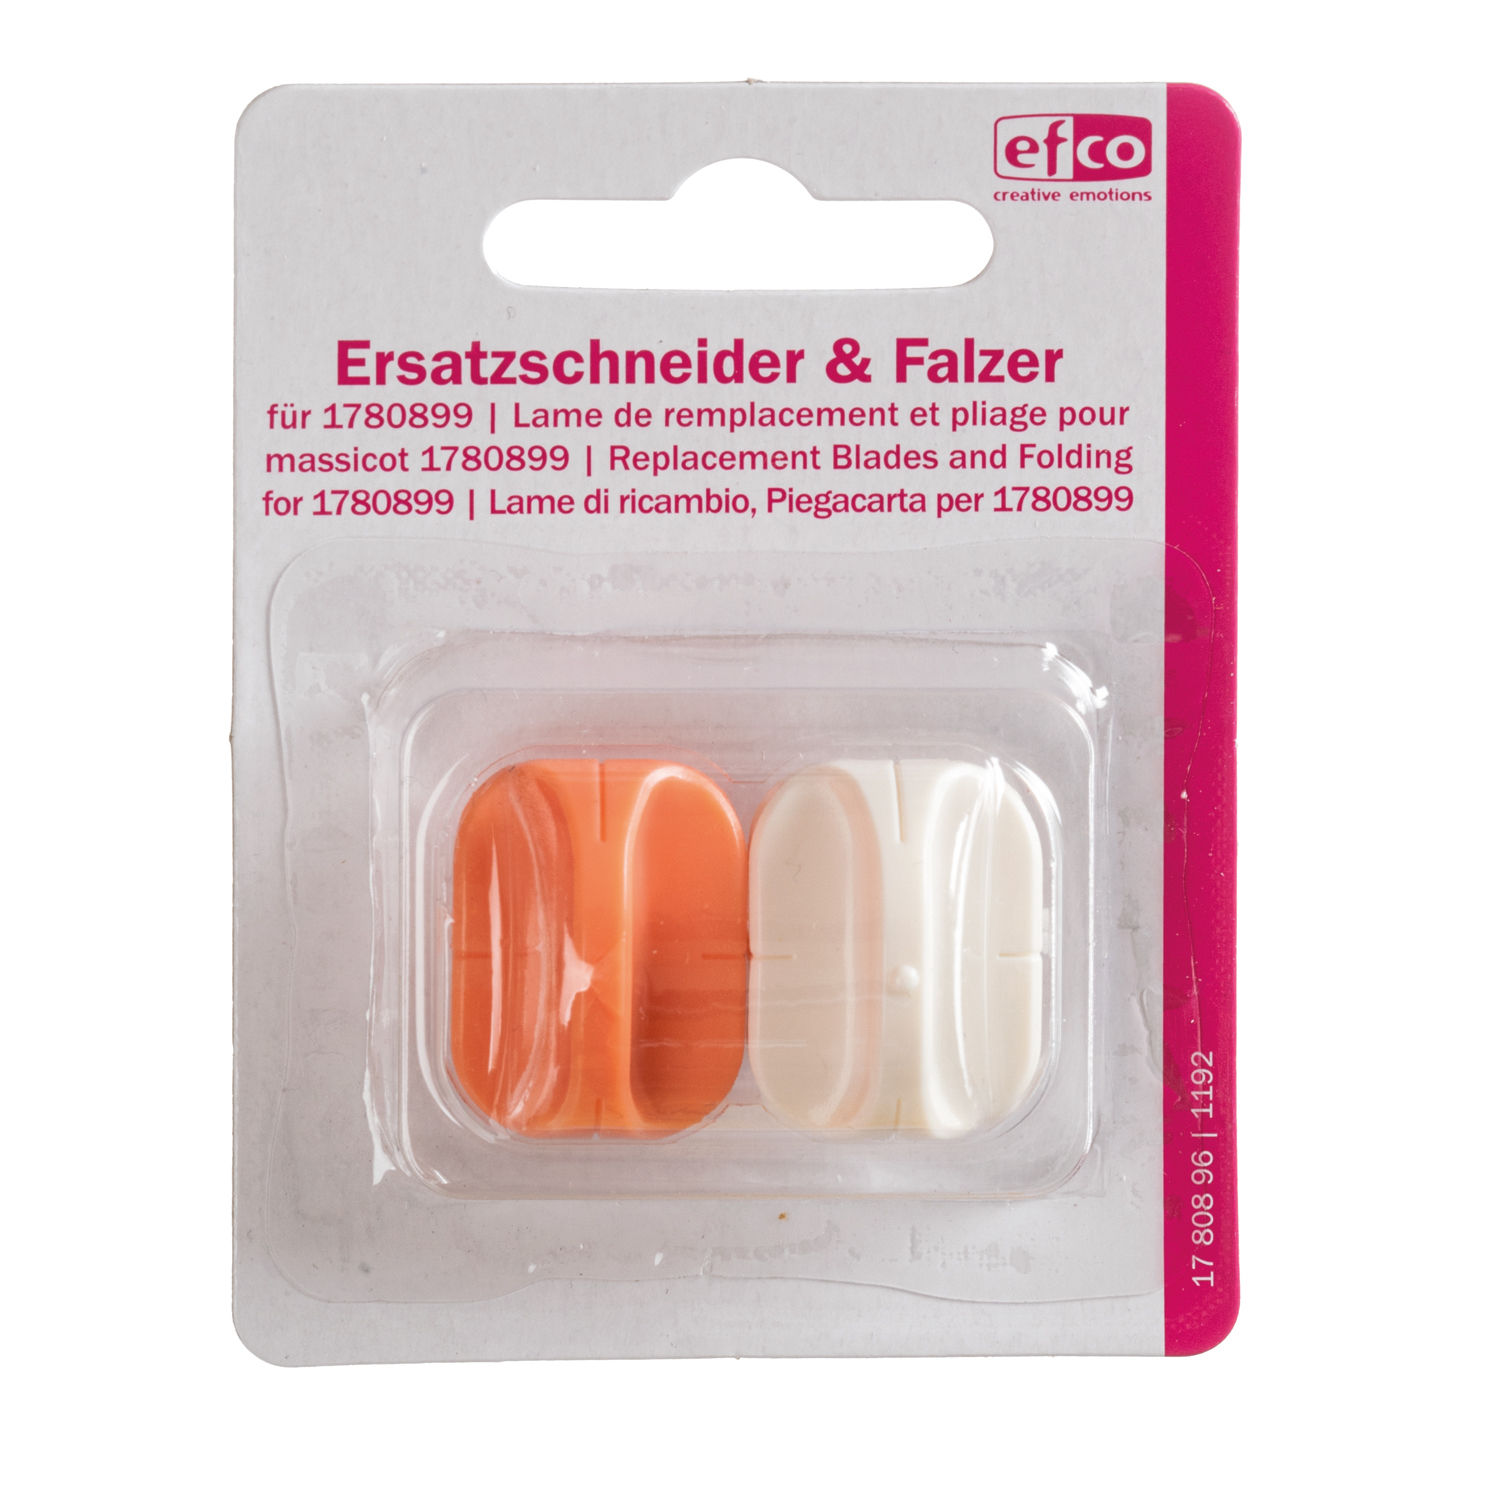 Ersatzschneider & Ersatzfalzer für Papierschneider / Papierfalzer, 2-teilig Bild 2